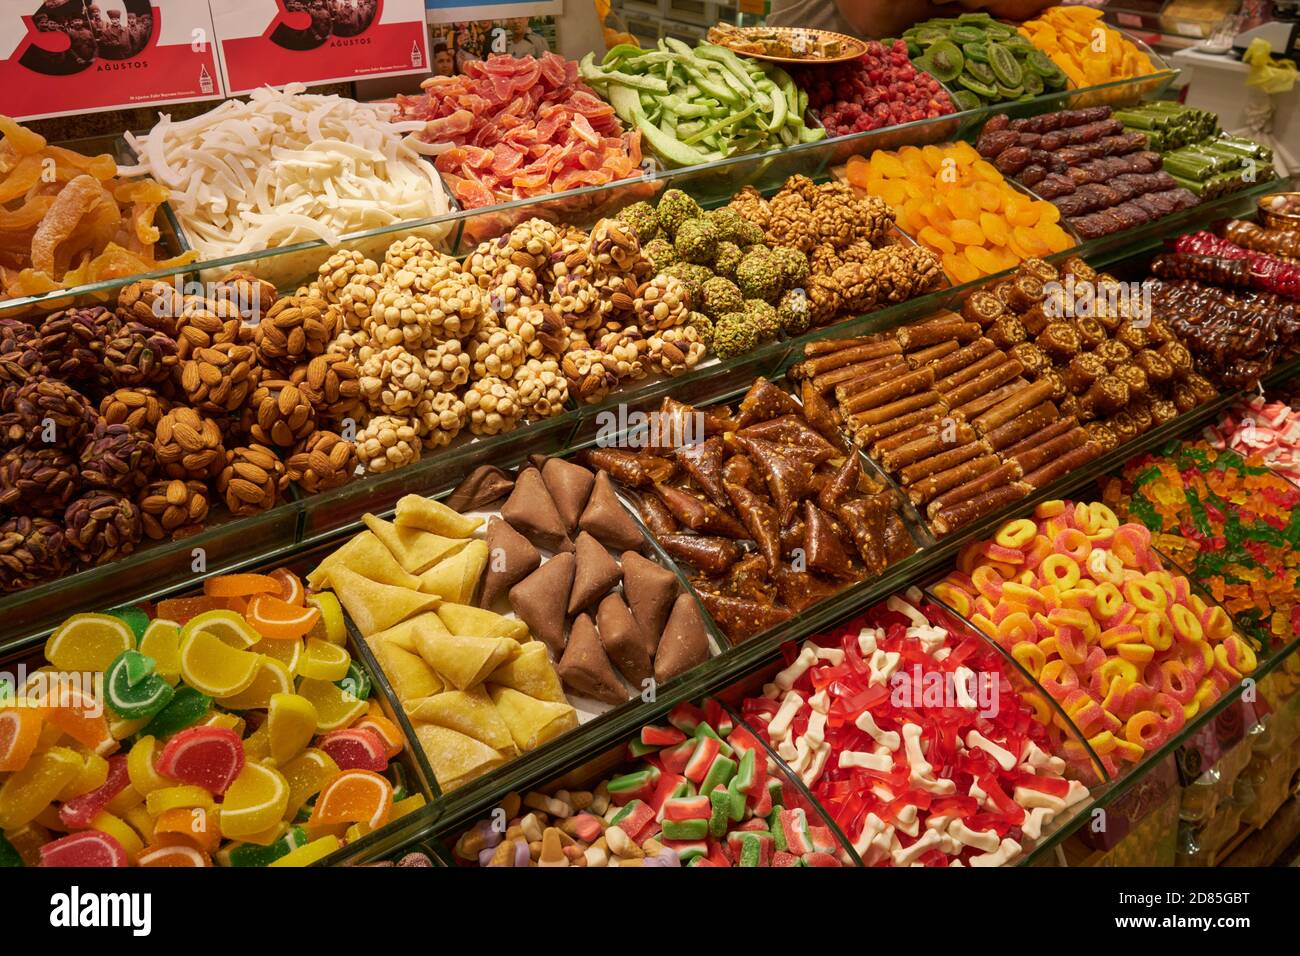 Boutique de bonbons turcs sur le marché égyptien, Istanbul, Turquie Banque D'Images